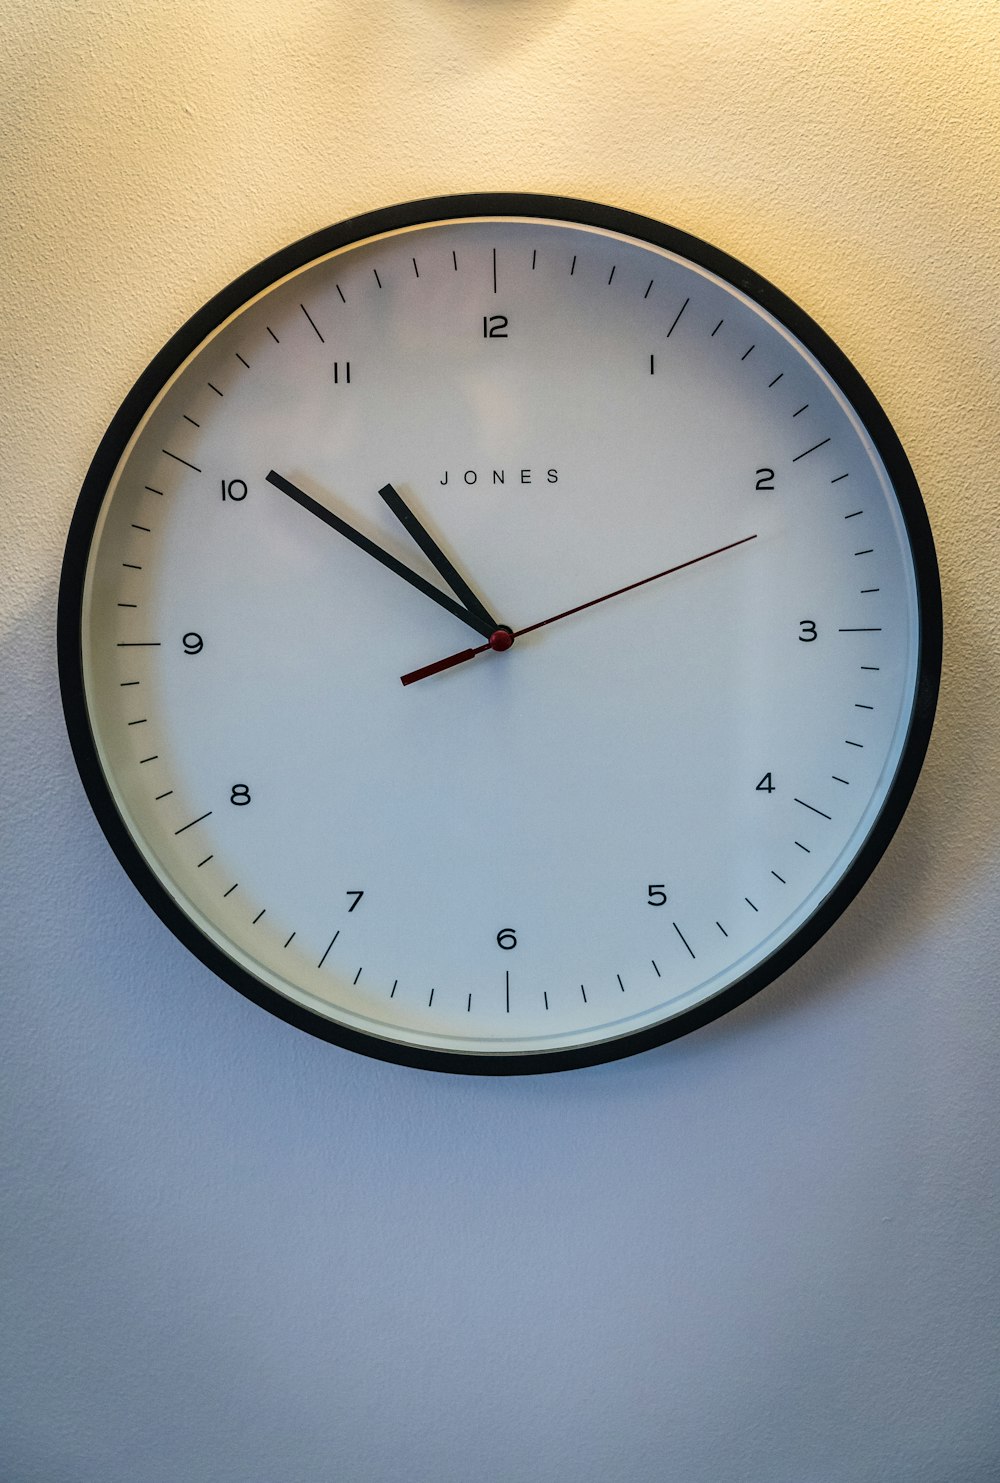 black round analog wall clock at 10 00